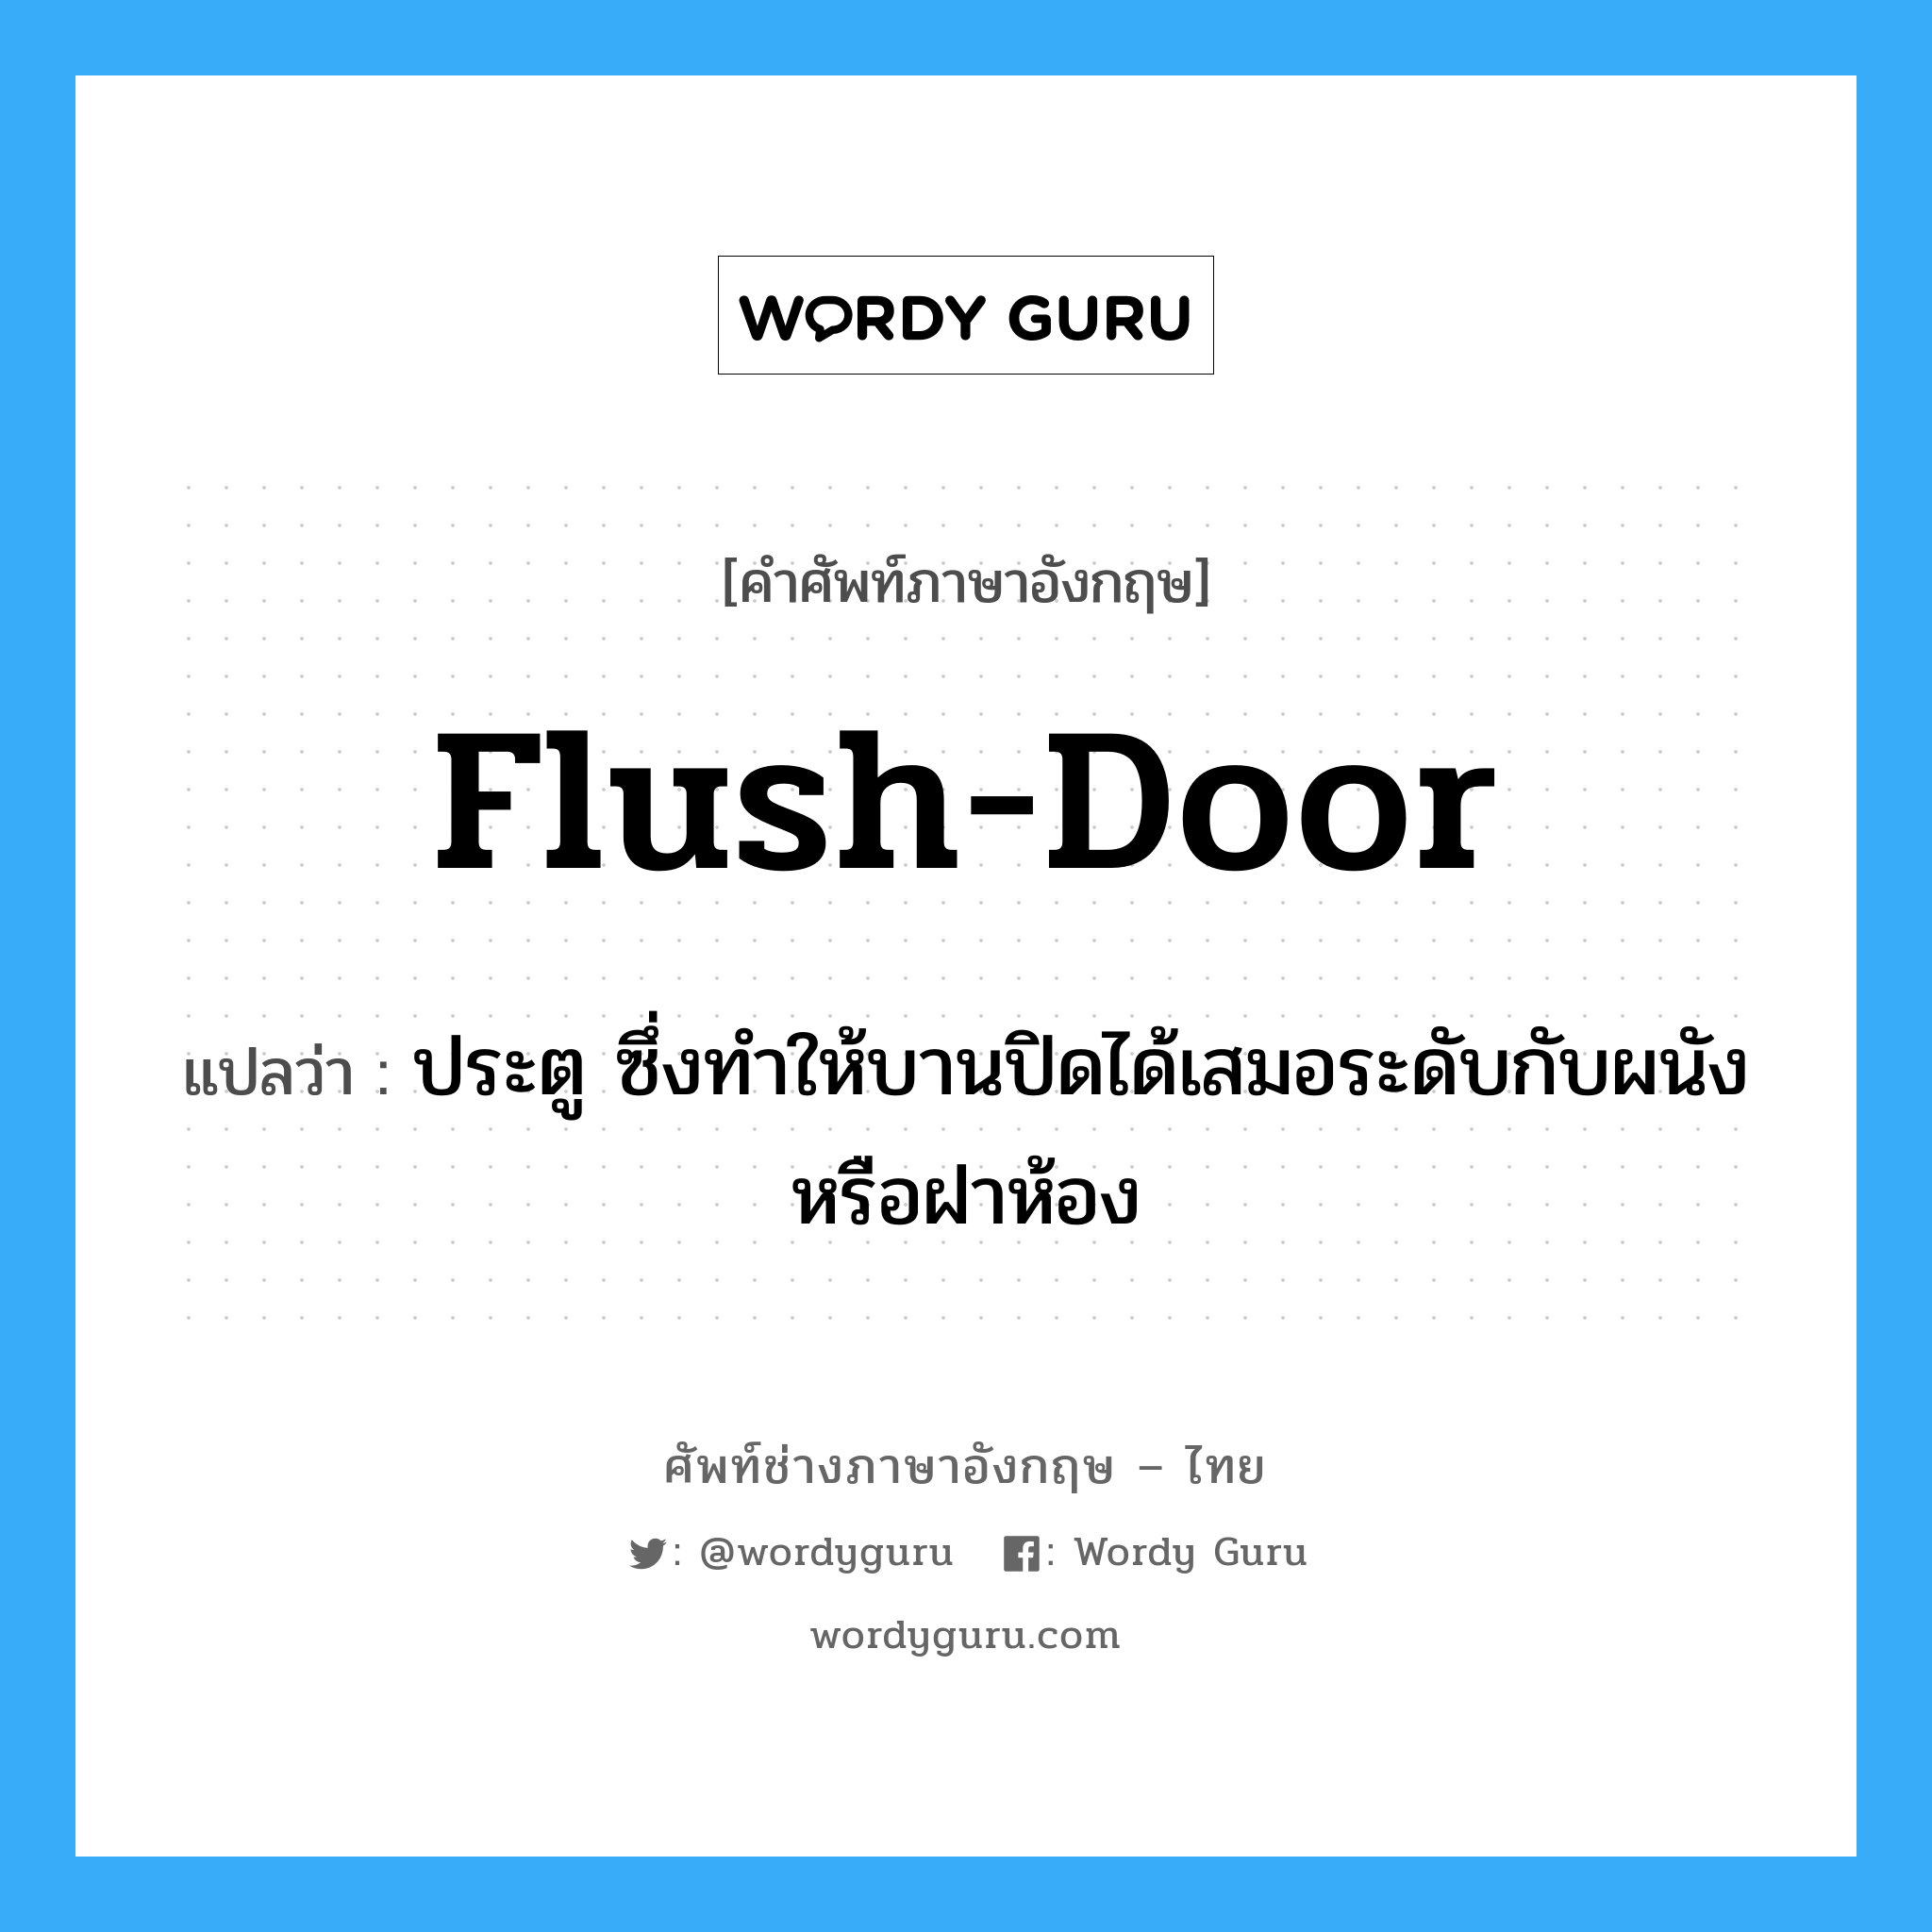 flush door แปลว่า?, คำศัพท์ช่างภาษาอังกฤษ - ไทย flush-door คำศัพท์ภาษาอังกฤษ flush-door แปลว่า ประตู ซึ่งทำให้บานปิดได้เสมอระดับกับผนังหรือฝาห้อง